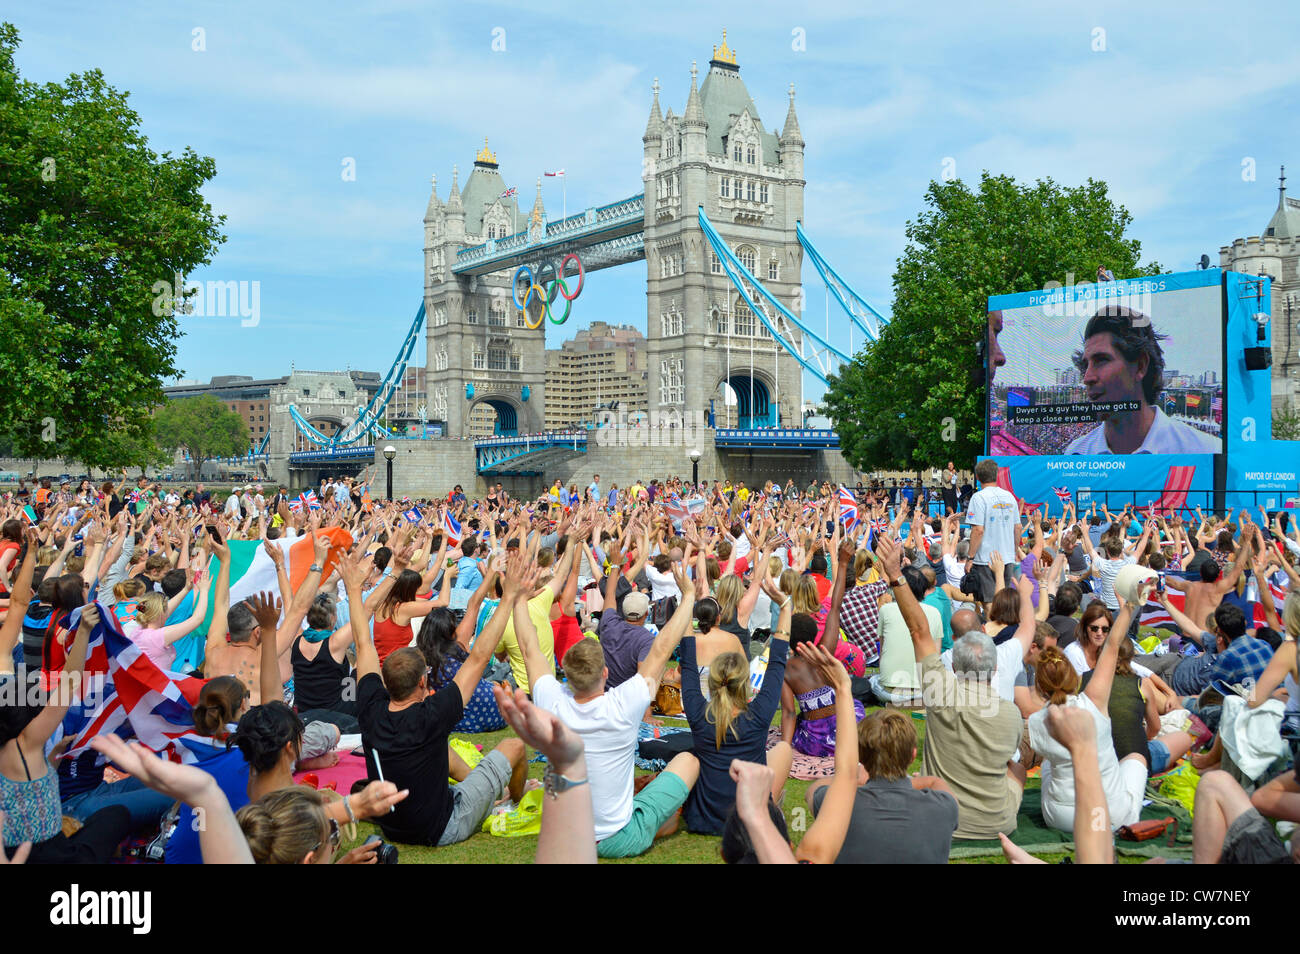 Les gens de foule s'assoient sur la pelouse des Jeux olympiques de Londres 2012 Téléviseur grand écran montre les mains vers le haut et le pont de la tour Potters Fields Park Southwark Angleterre Royaume-Uni Banque D'Images